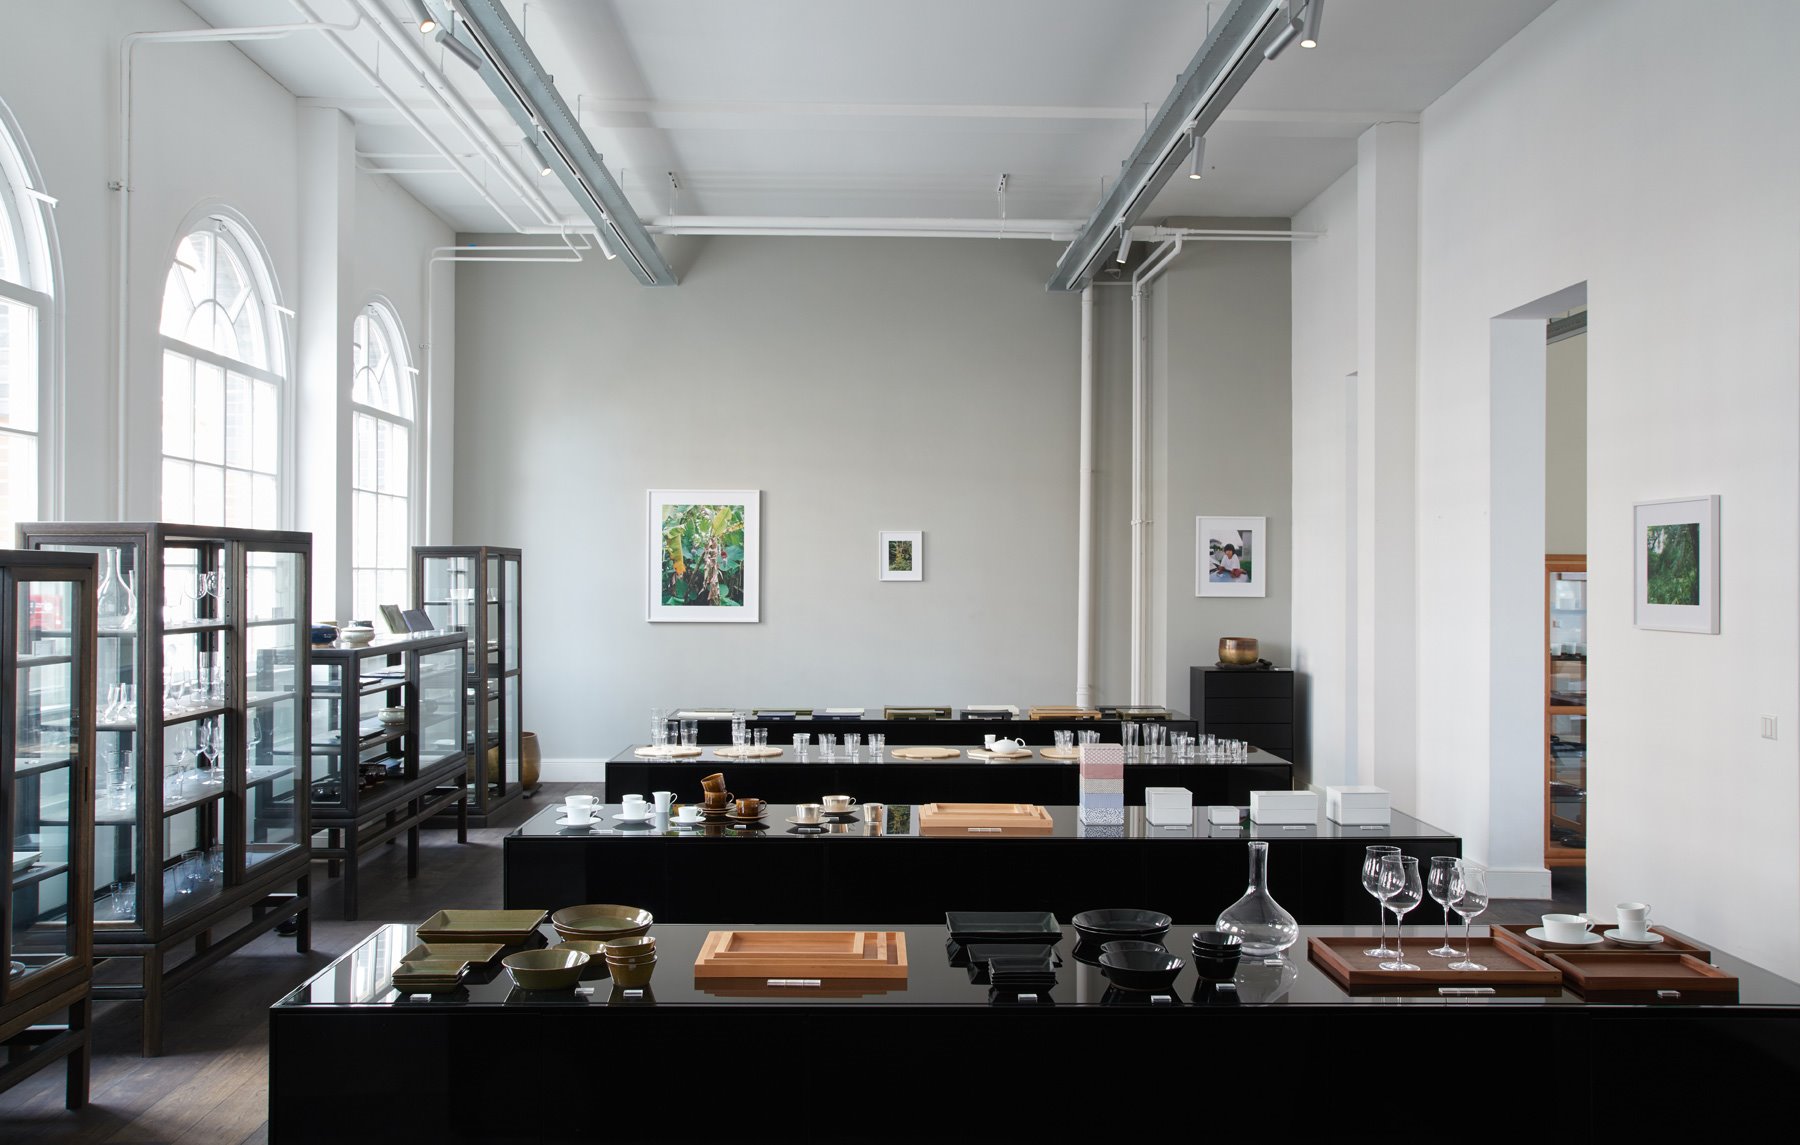 Tienda en Amsterdam de mobiliario moderno Time & Style creada por Kengo Kuma platos de ceramica y madera y copas de cristal